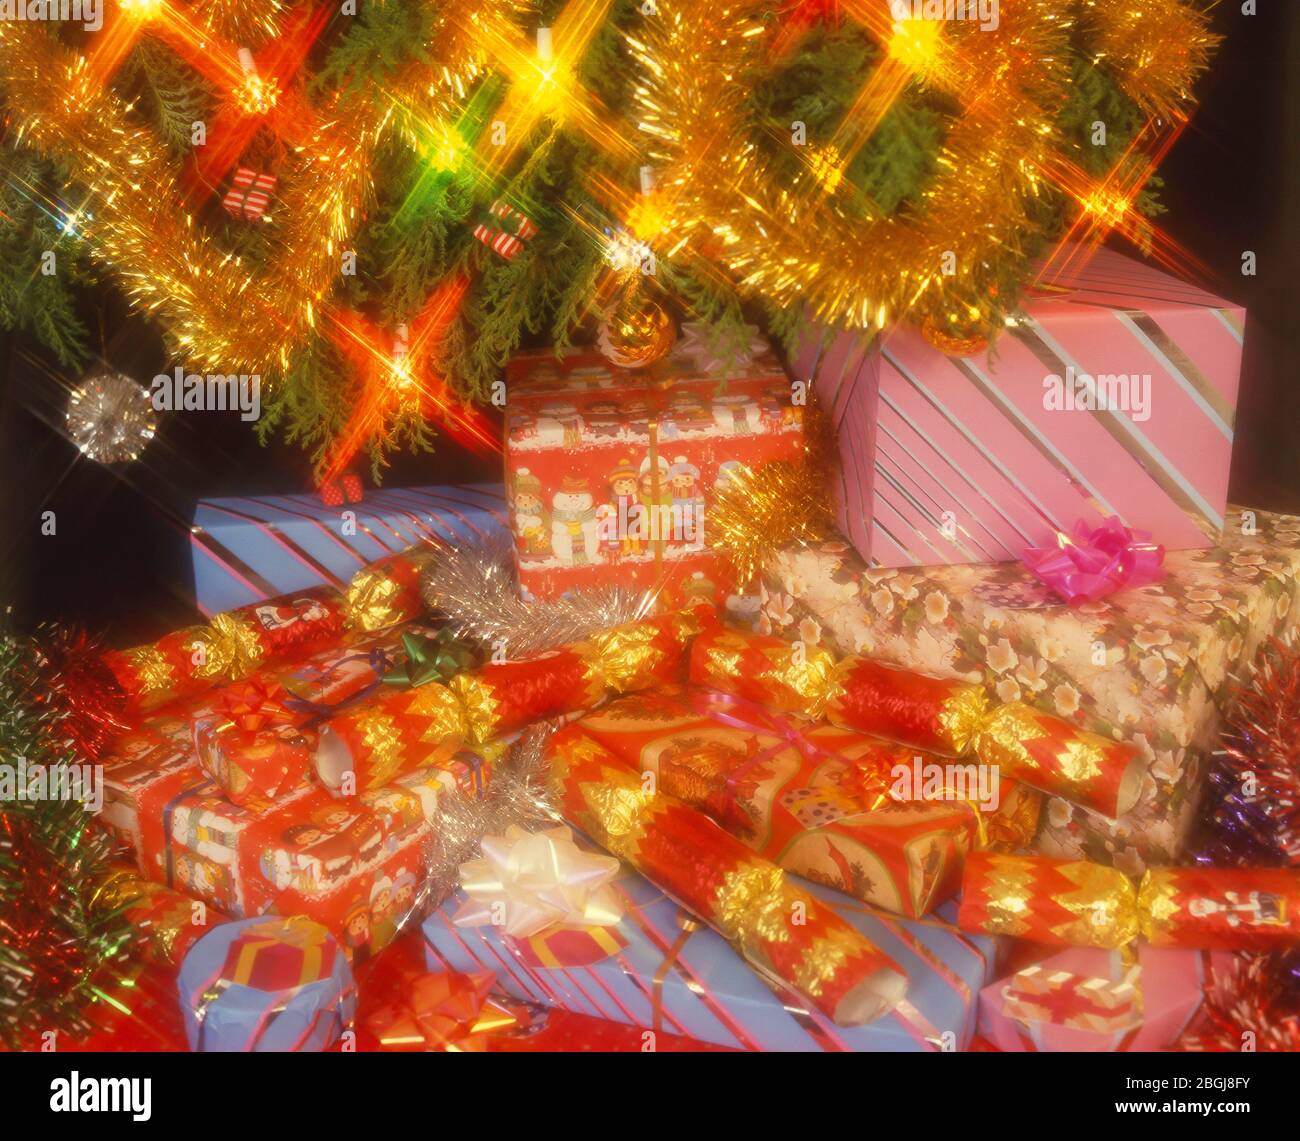 Galletas y regalos de Navidad debajo del árbol de Navidad, Ascot, Berkshire, Reino Unido Foto de stock